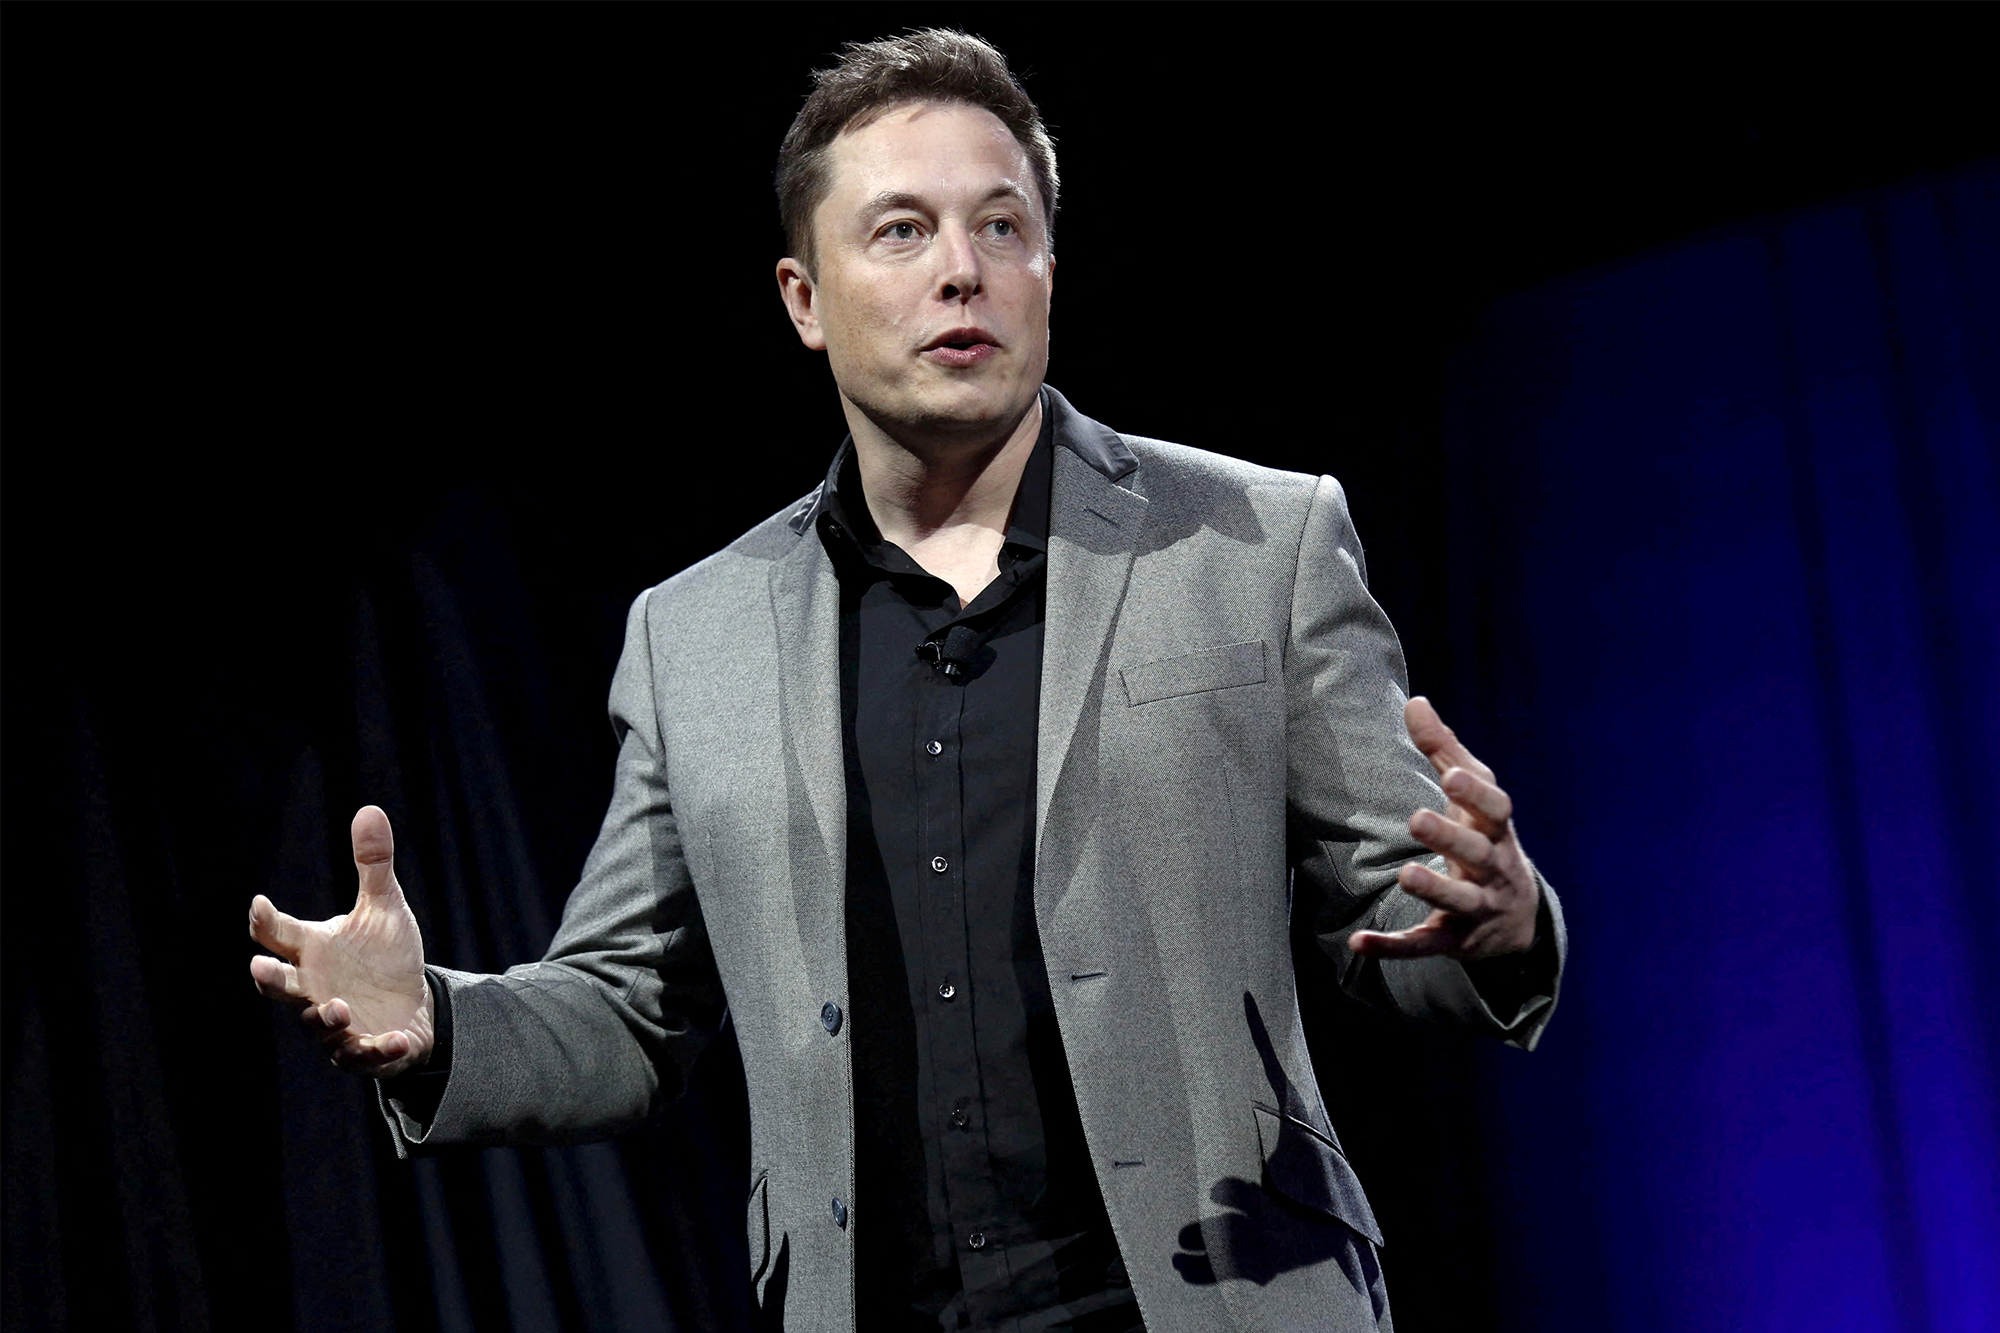 Ủy ban chứng khoán Mỹ "soi" Elon Musk, cho rằng ông này trái luật khi công bố cổ phần Twitter